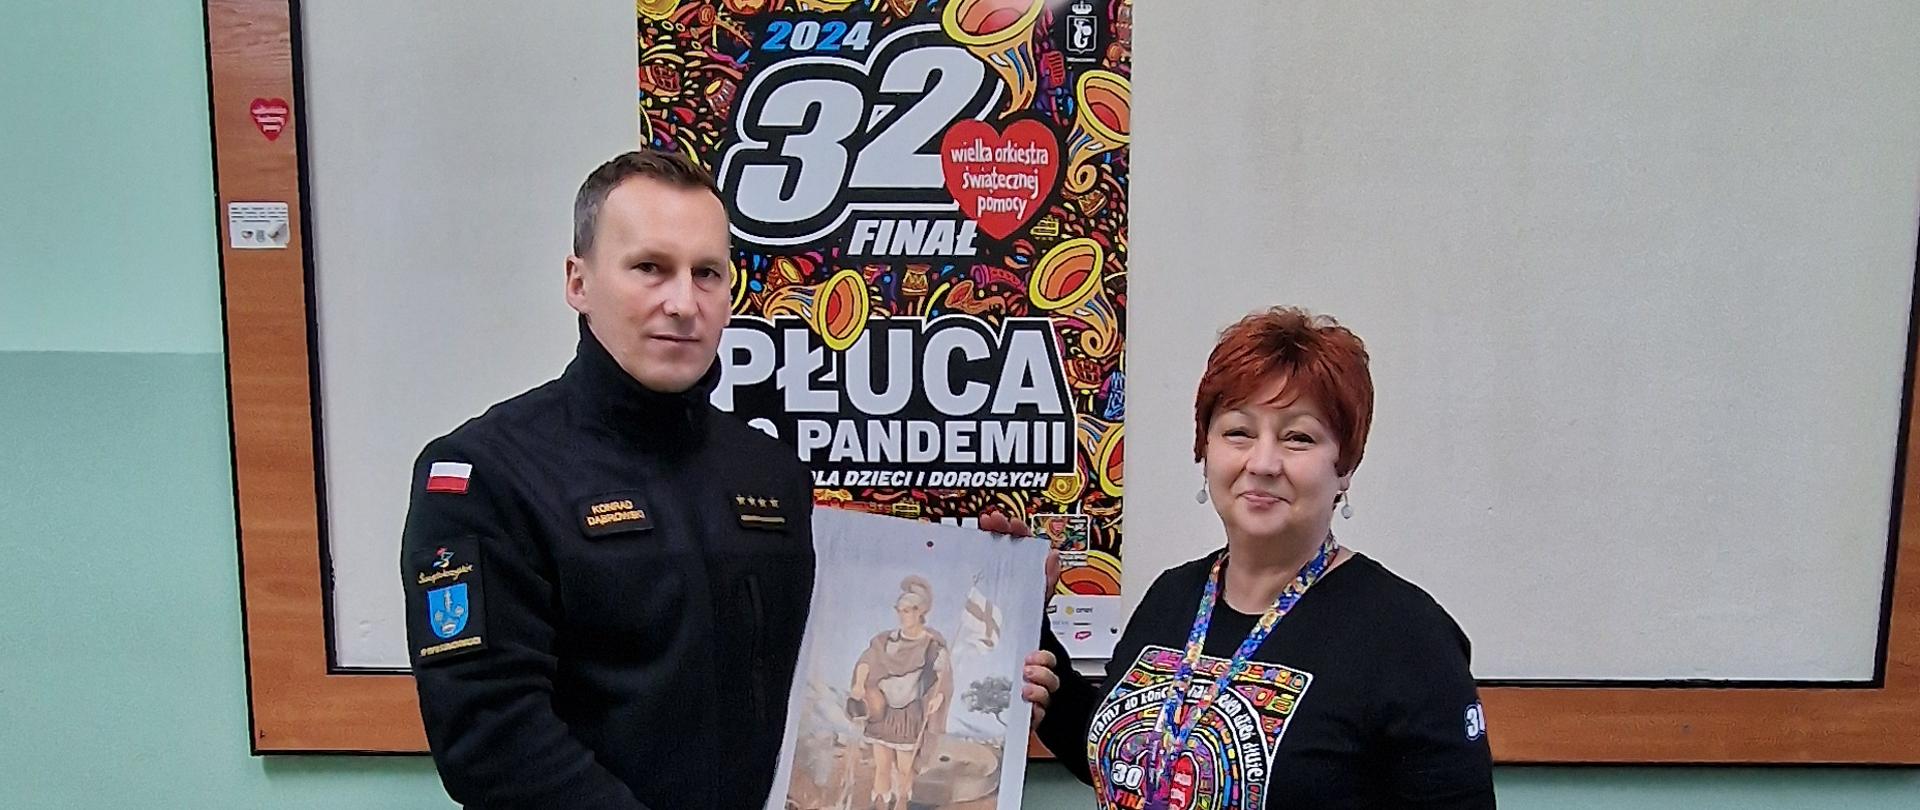 Strażak przekazujący płytkę z wizerunkiem św. Floriana wolontariuszowi WOŚP, w tle plakat 32 finału WOŚP